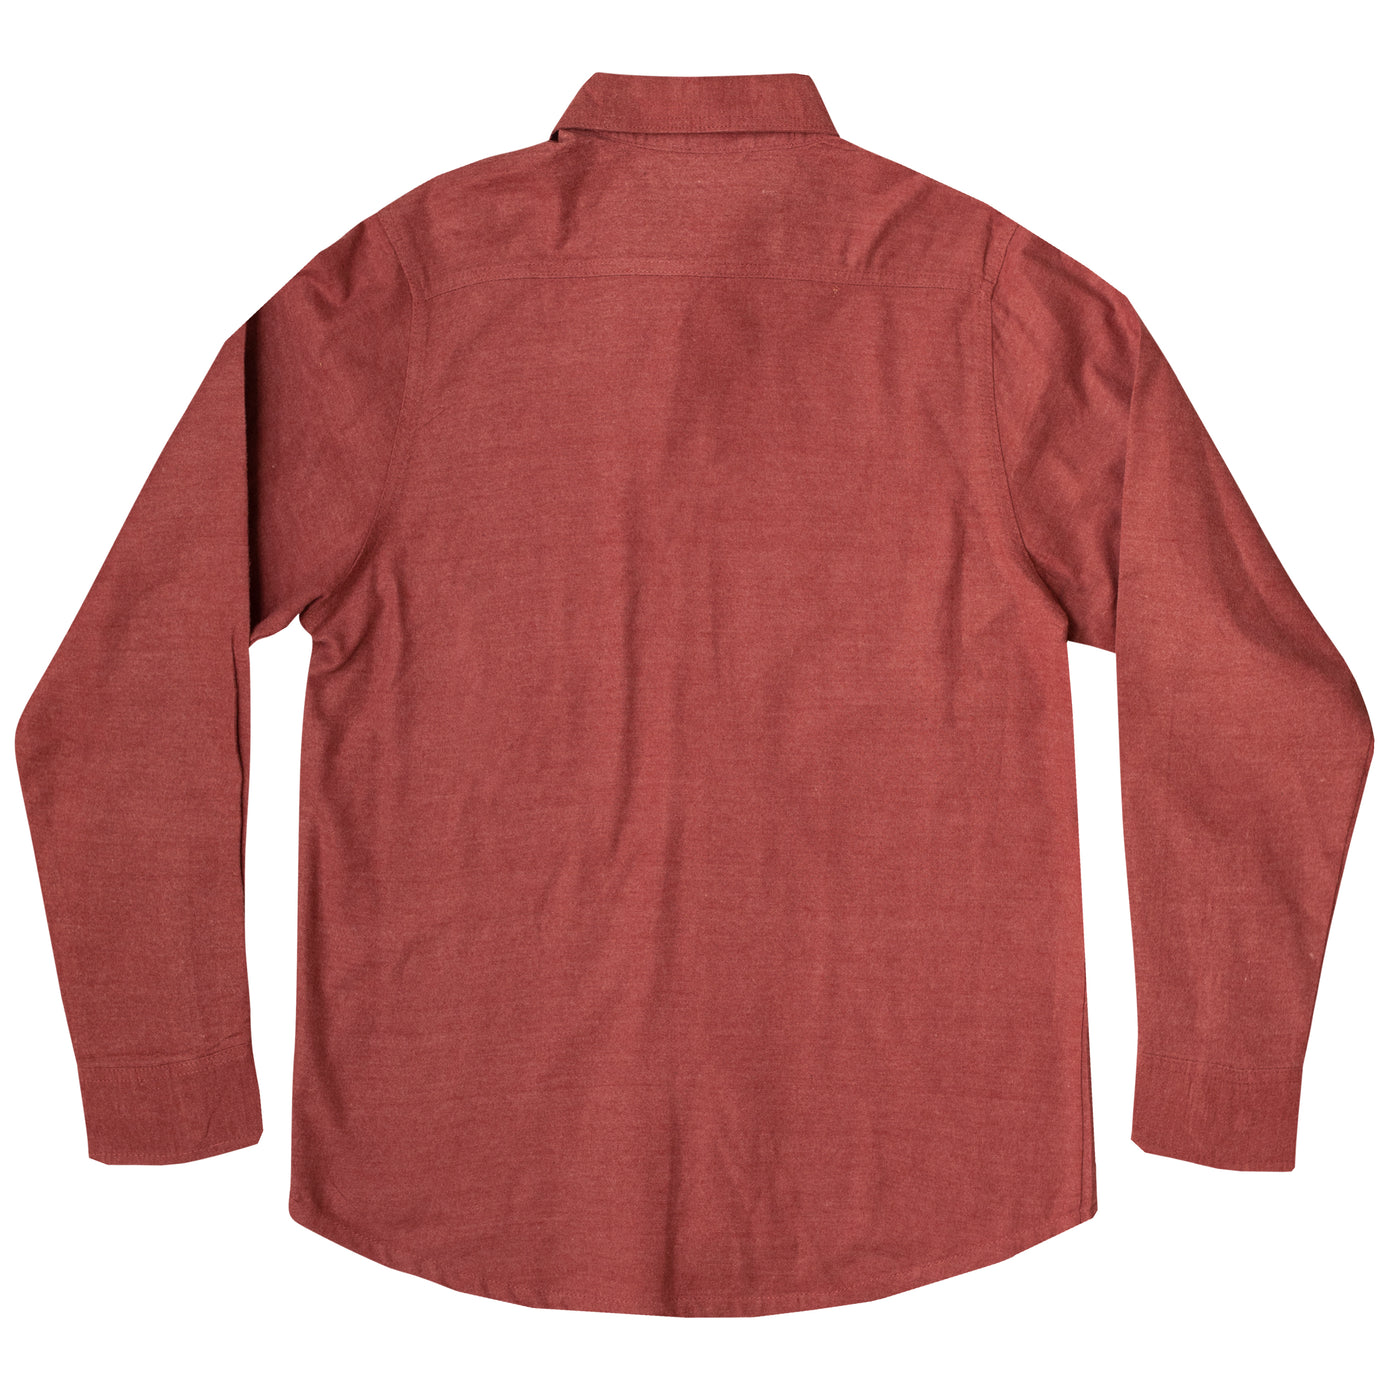 Mossy Oak Men's Flannel Shirt Rosewood Back